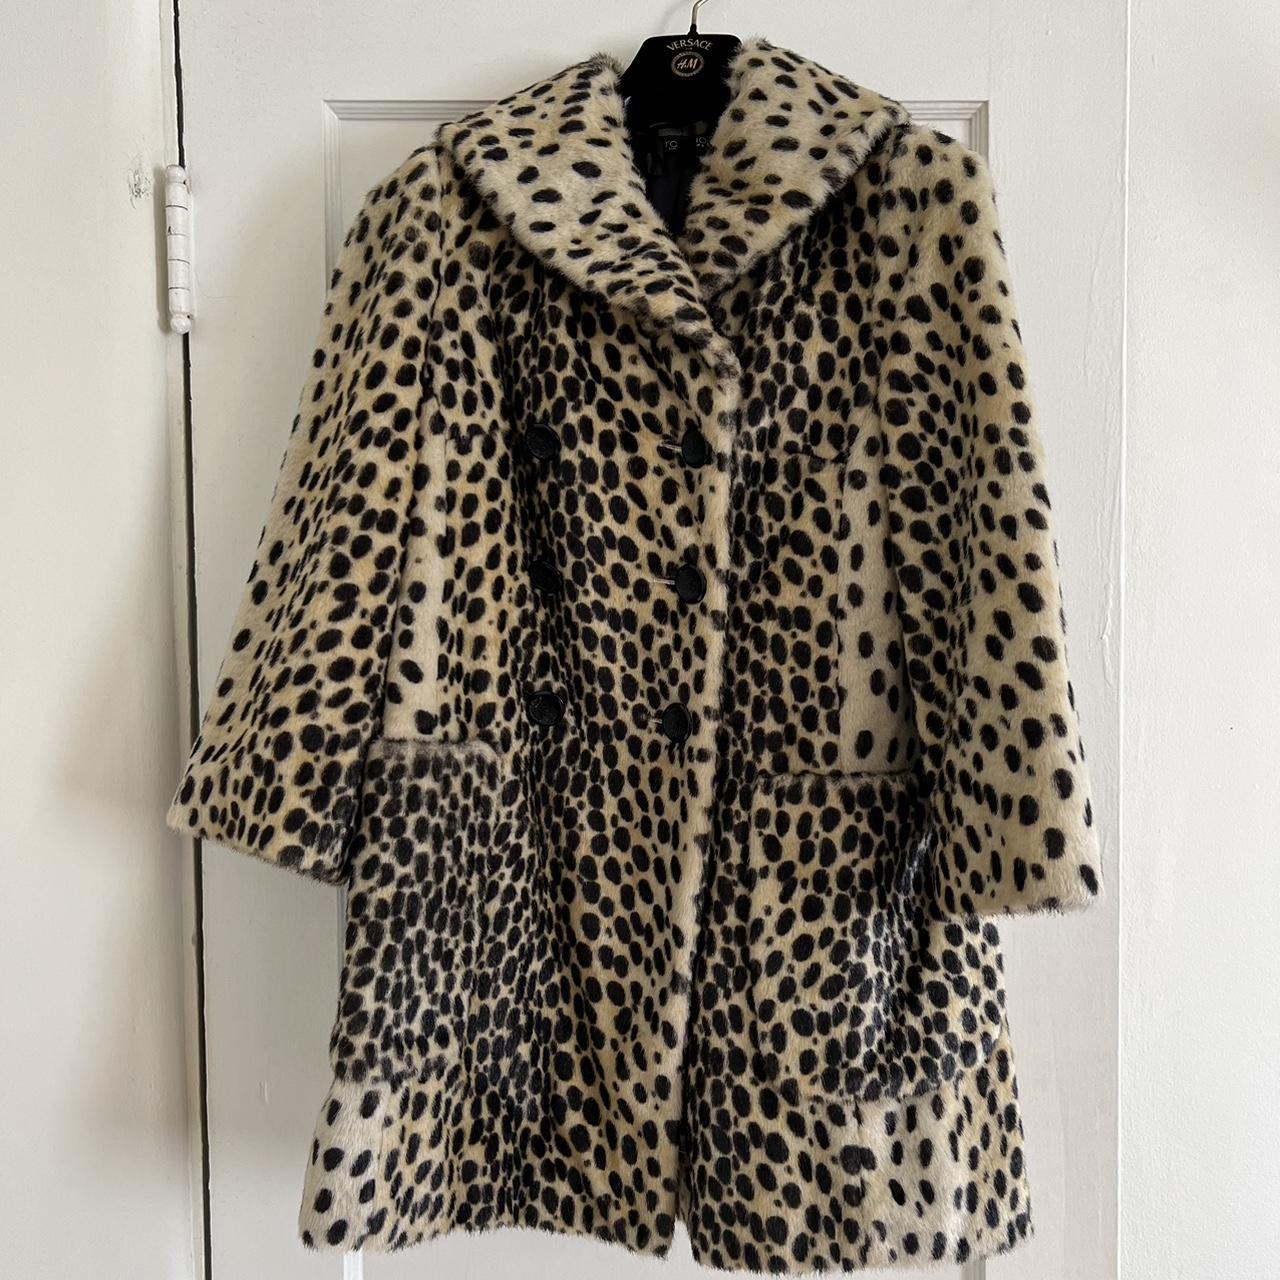 Topshop Leopard Faux Fur Coat Amazing condition,... - Depop